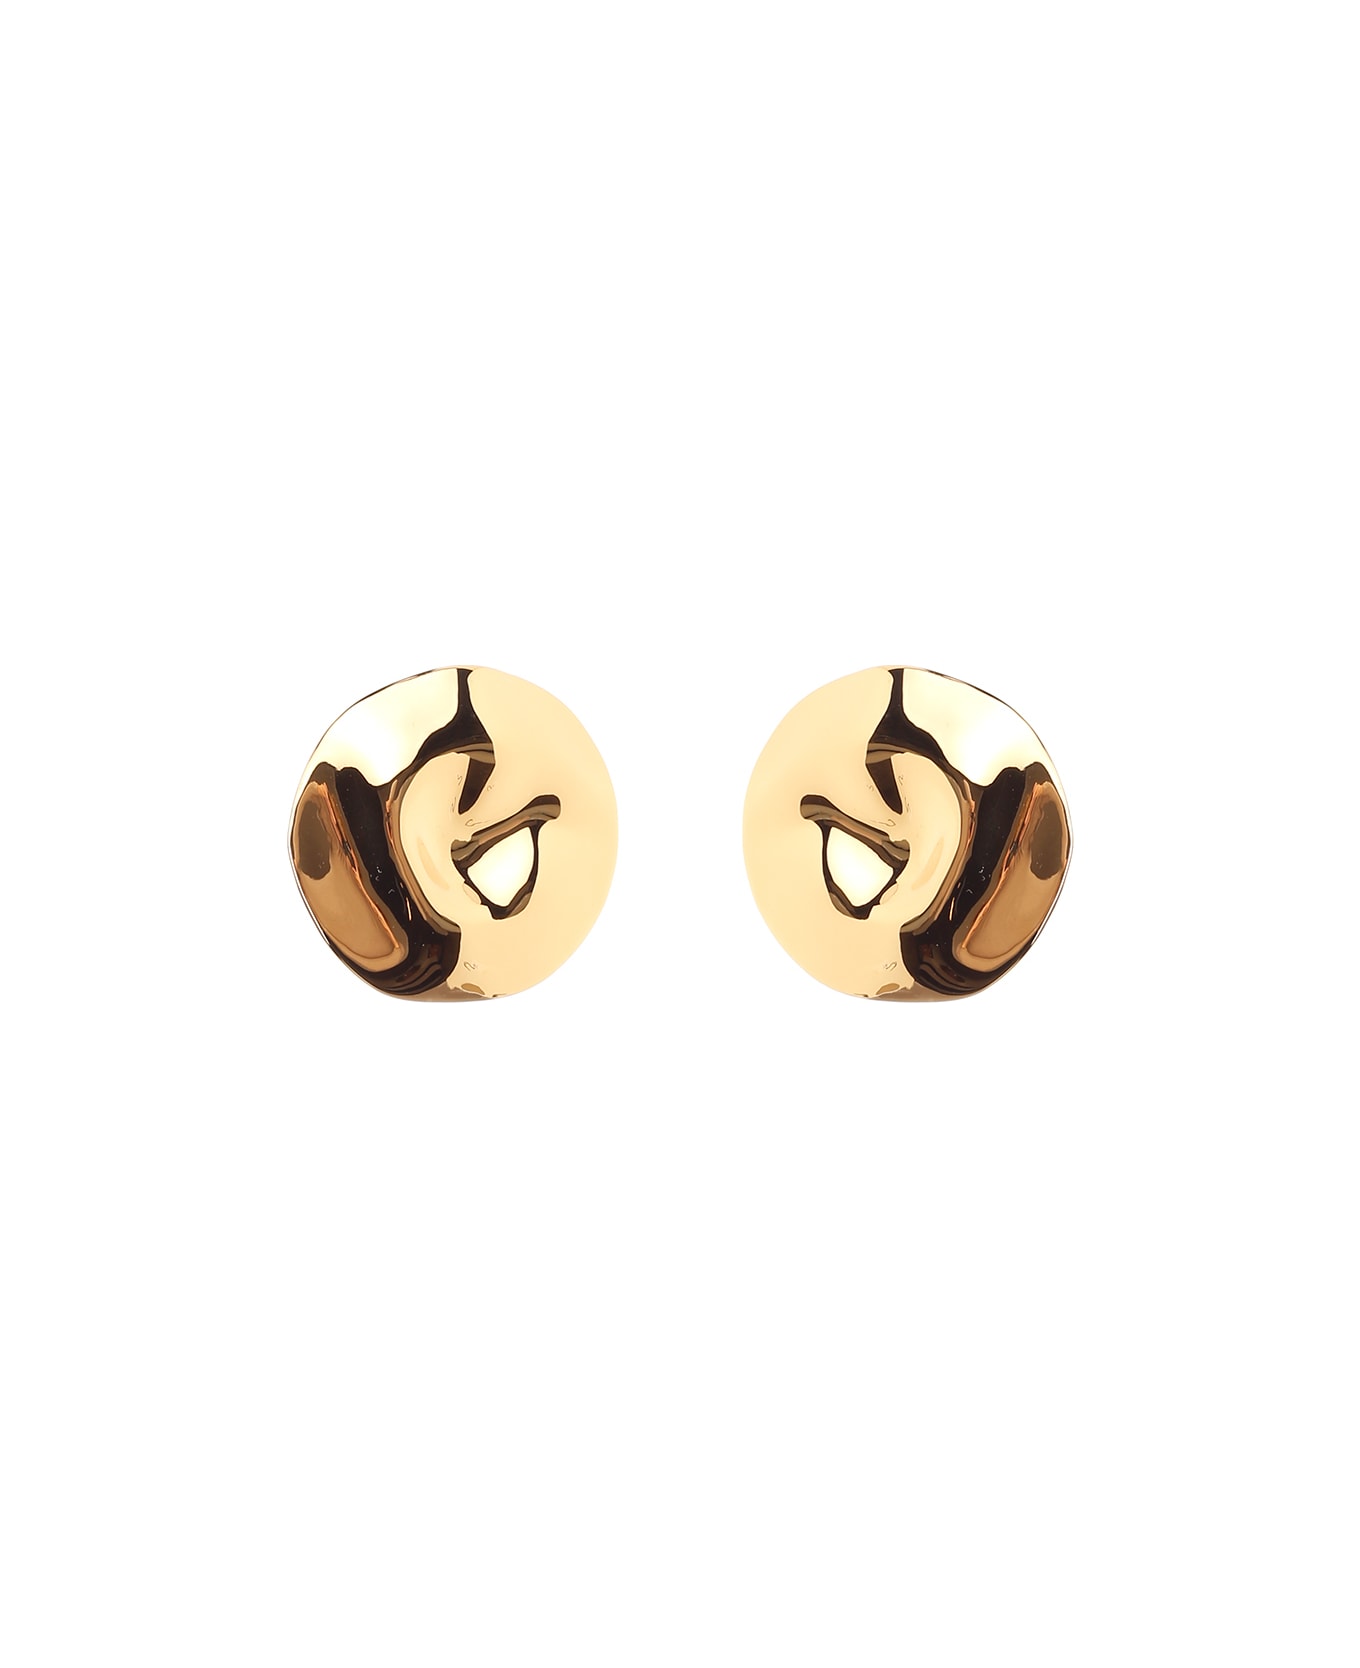 Alexander McQueen Metallic Earrings - Gold